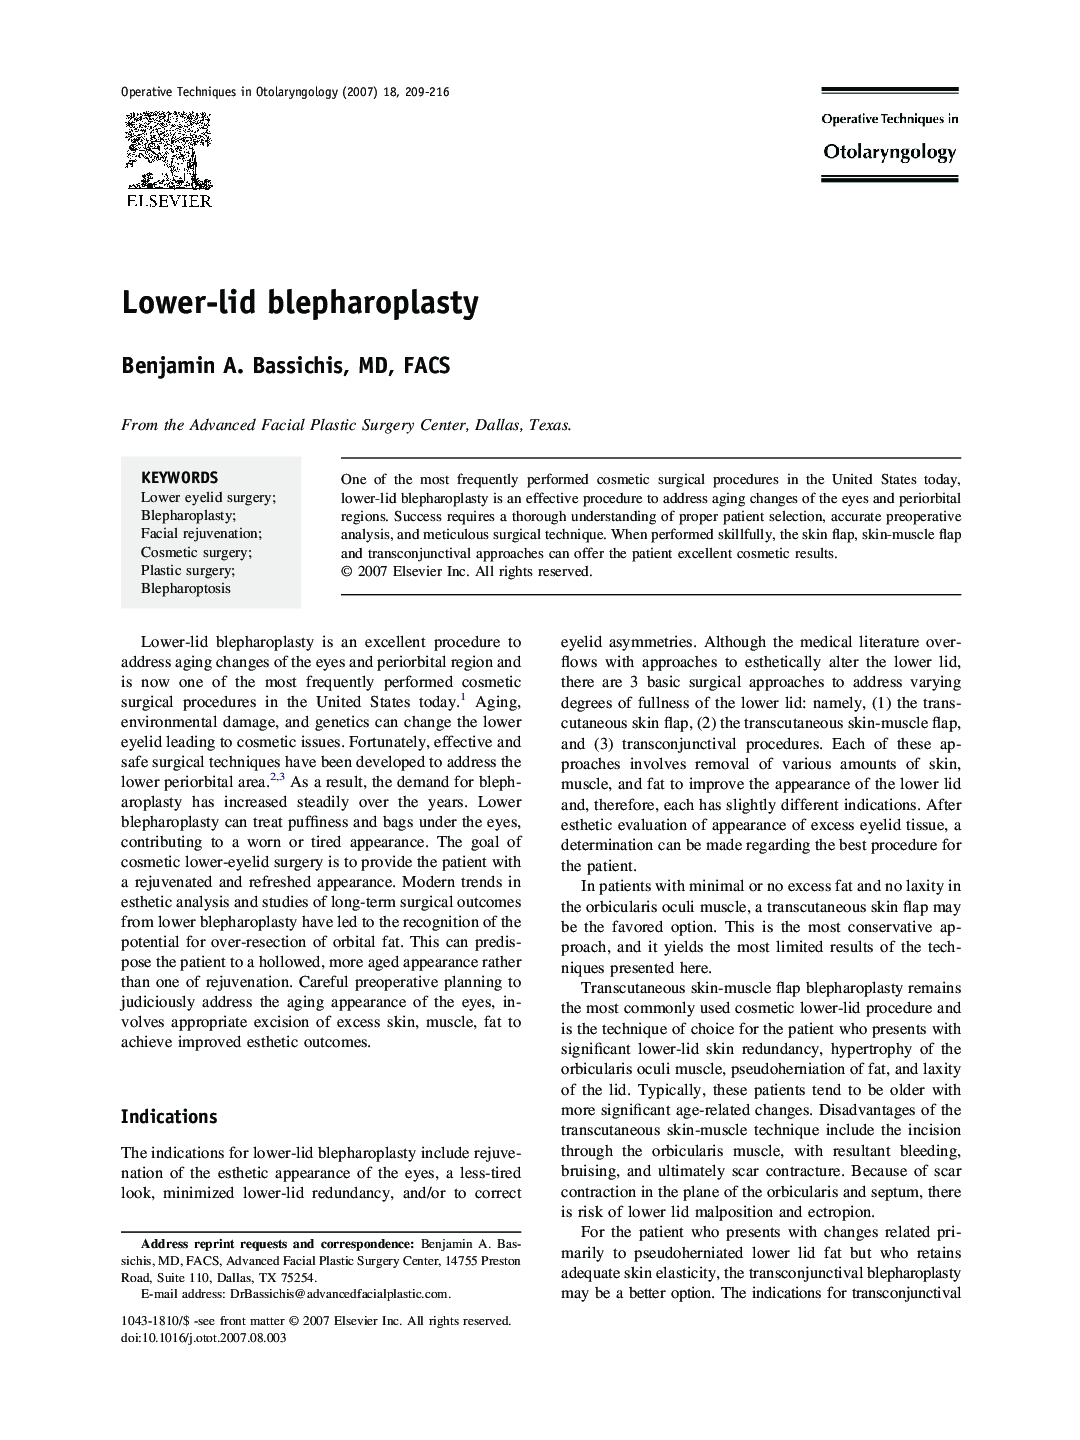 Lower-lid blepharoplasty